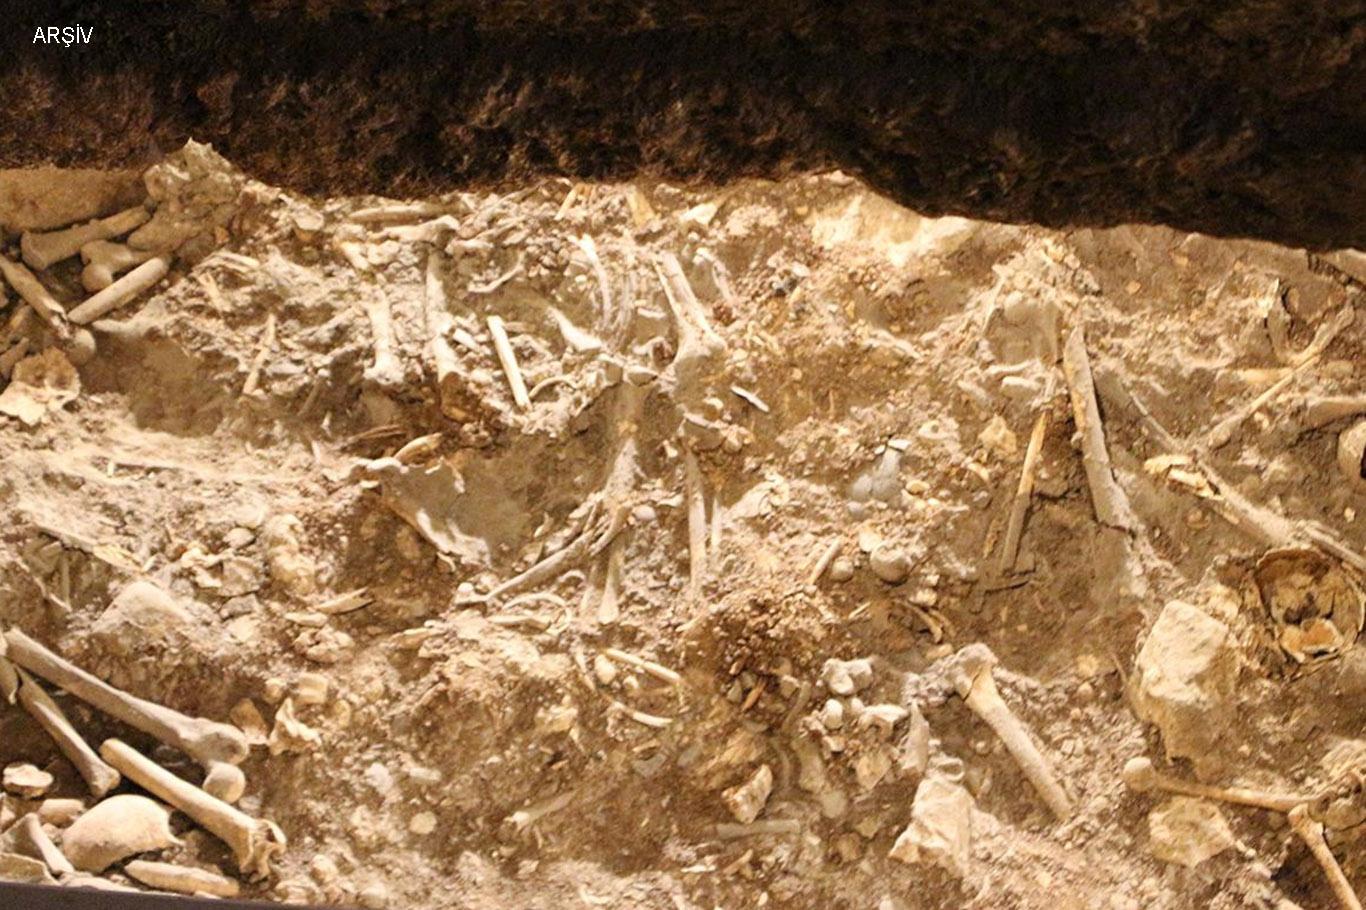 Mağarada insan kemiklerinin bulunmasına ilişkin açıklama